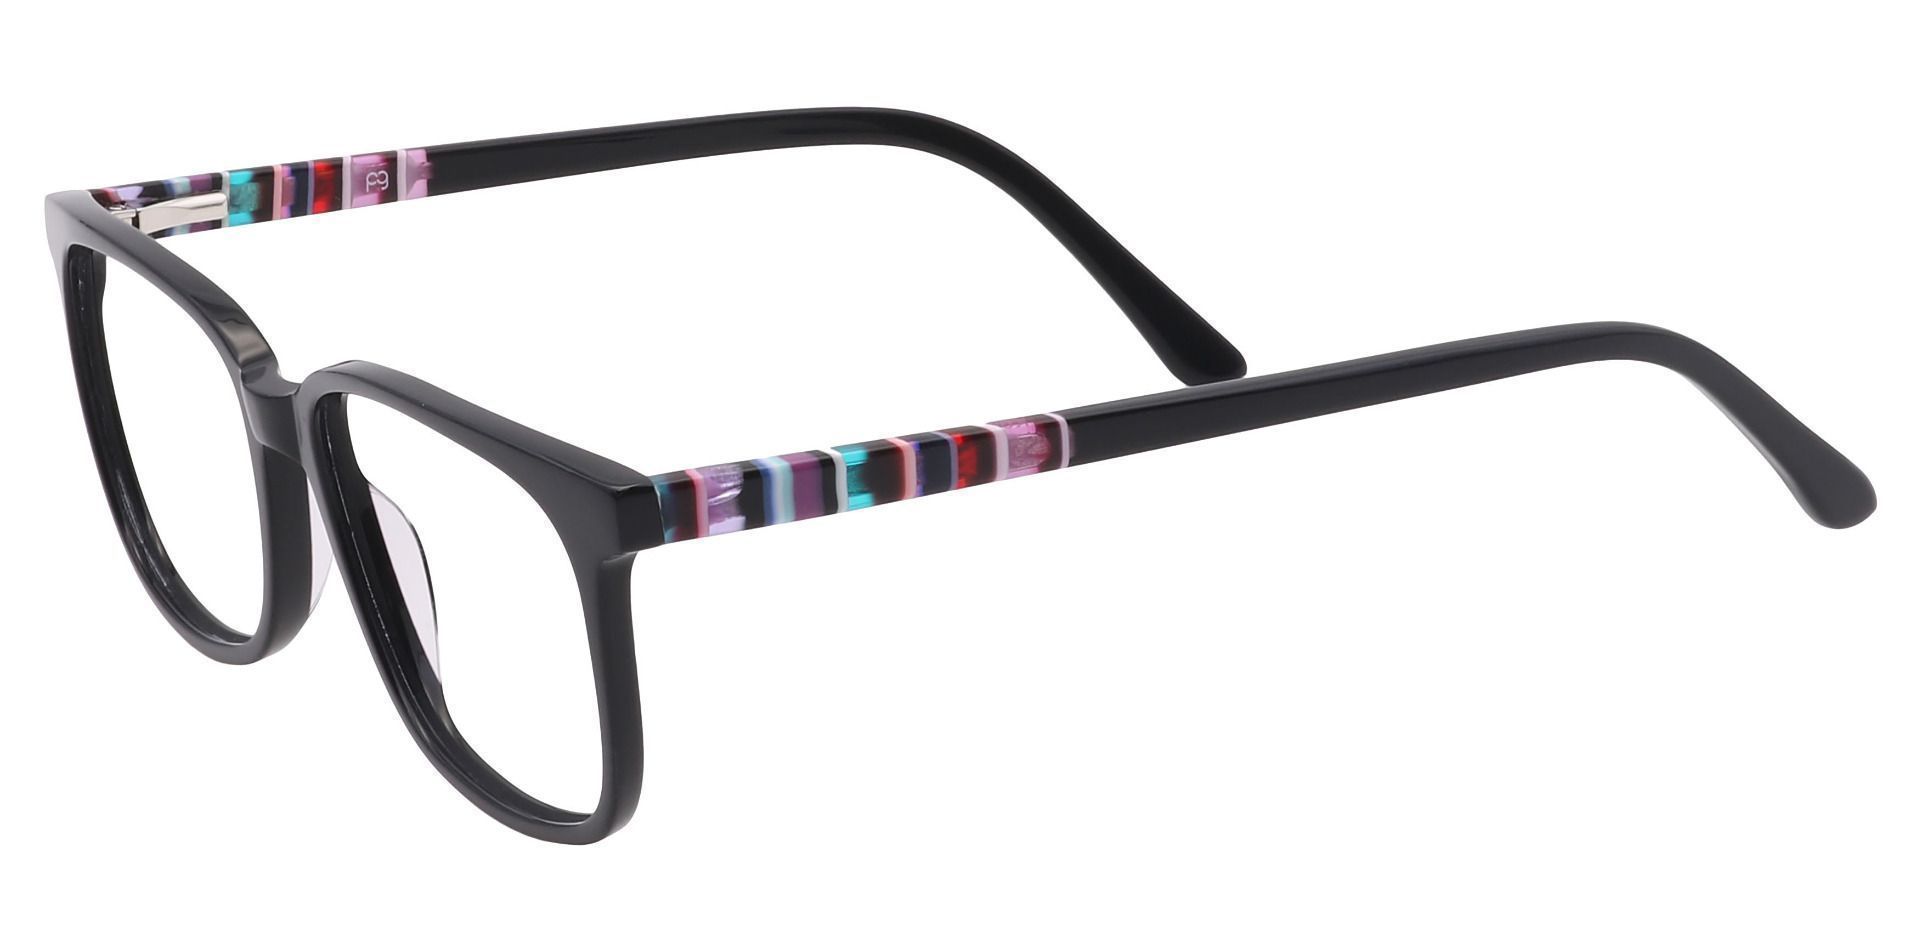 Fern Square Eyeglasses Frame - Black